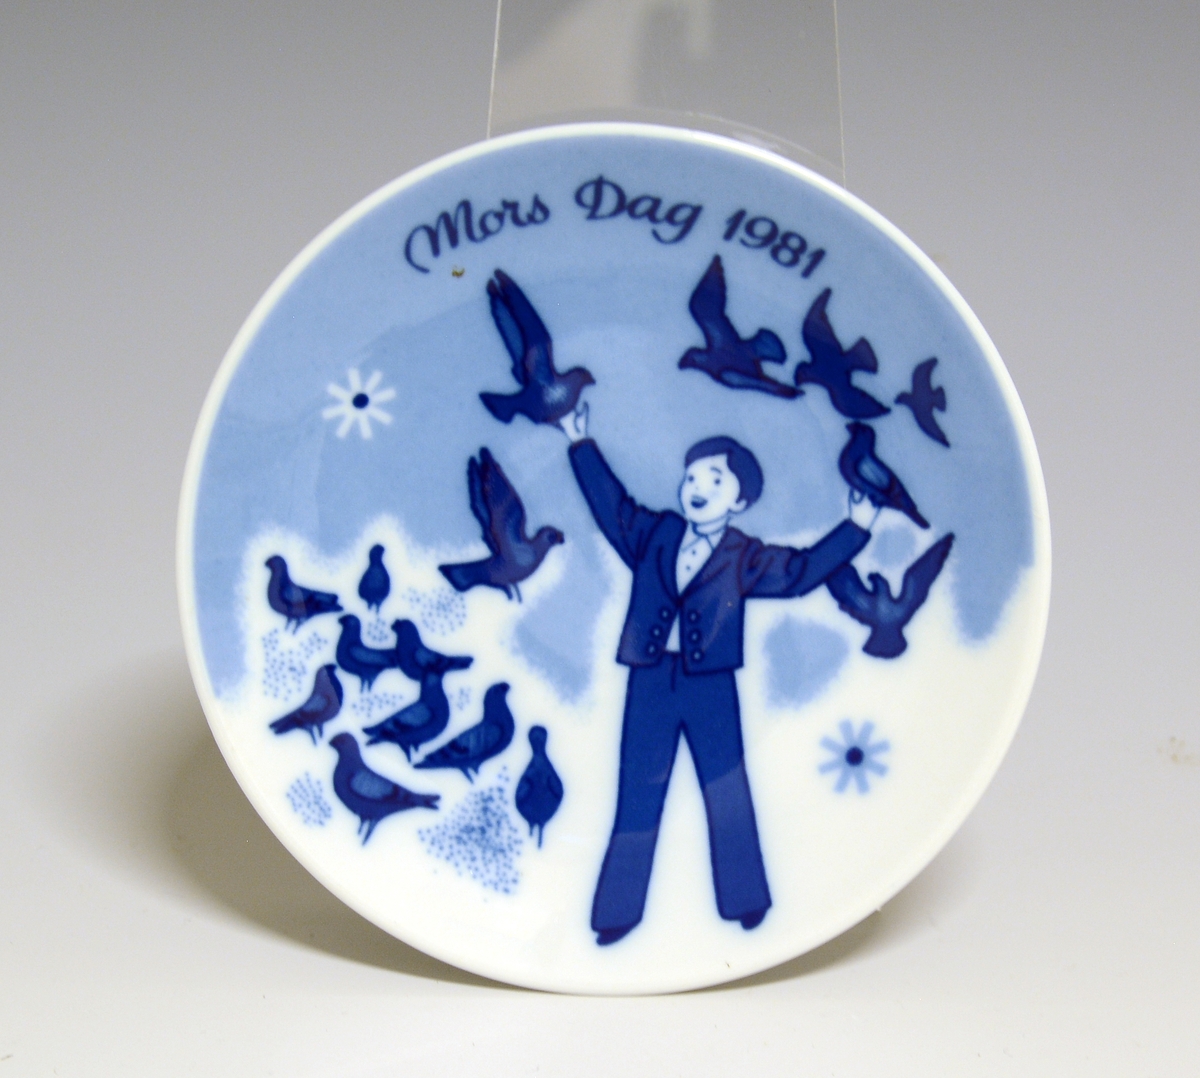 Morsdagsplatte av porselen. Hull til oppheng bak. Hvit glasur. Dekorert i blått med en gutt omgitt av duer, tekst Mors Dag 1981.